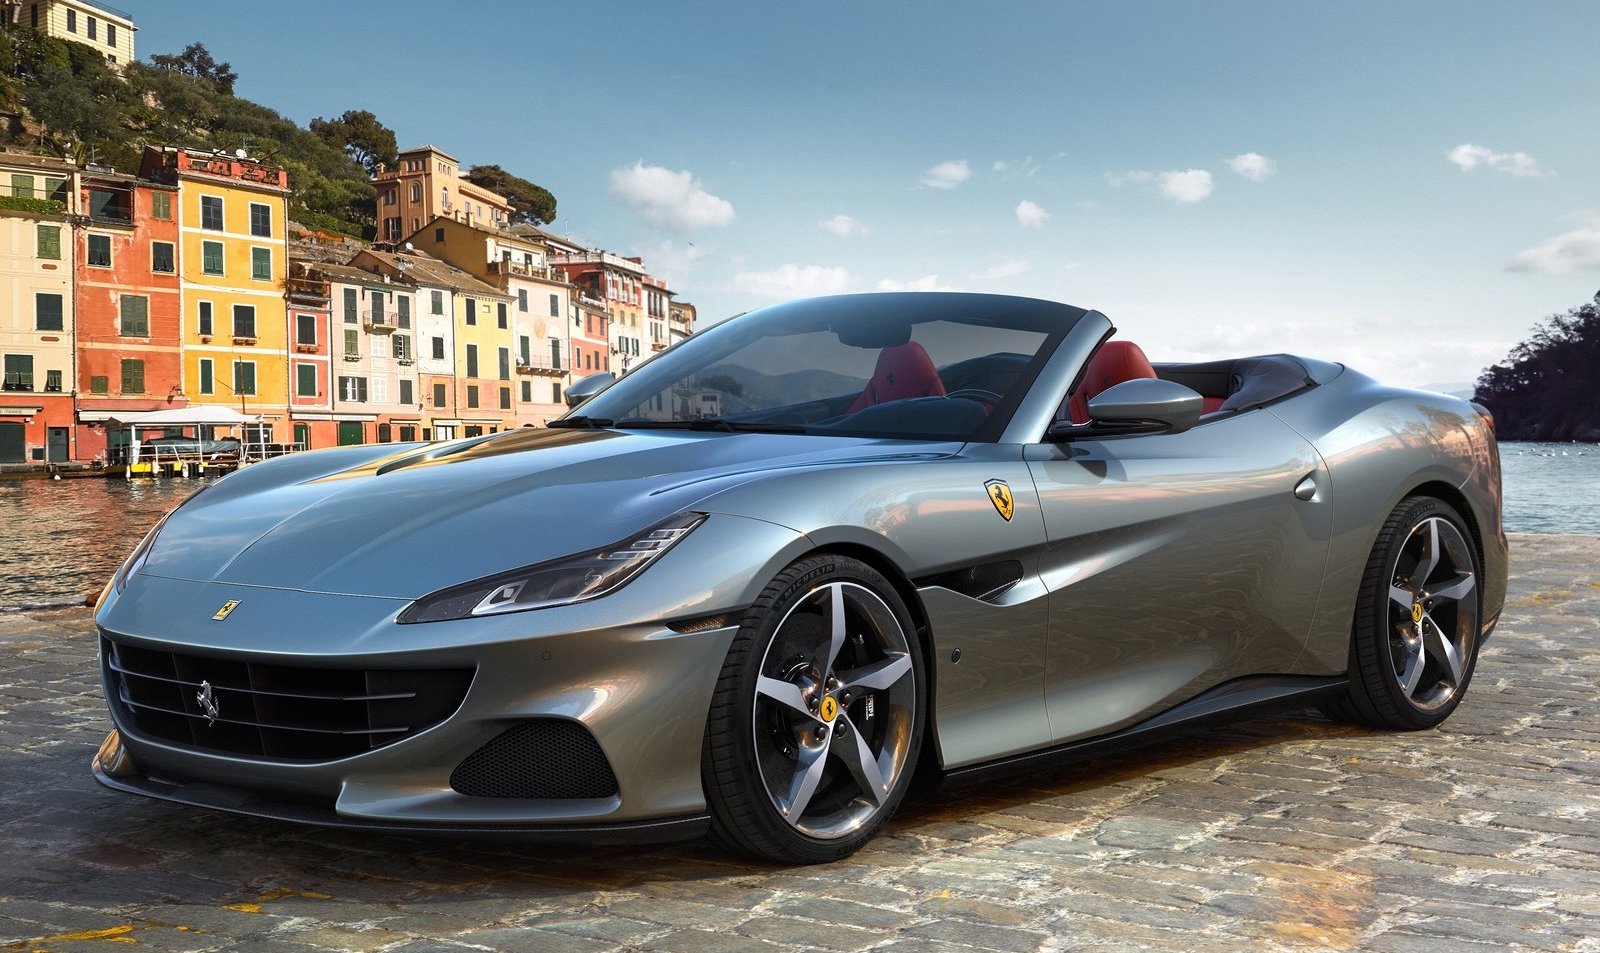 Ferrari Portofino M announced as refreshed GT convertible